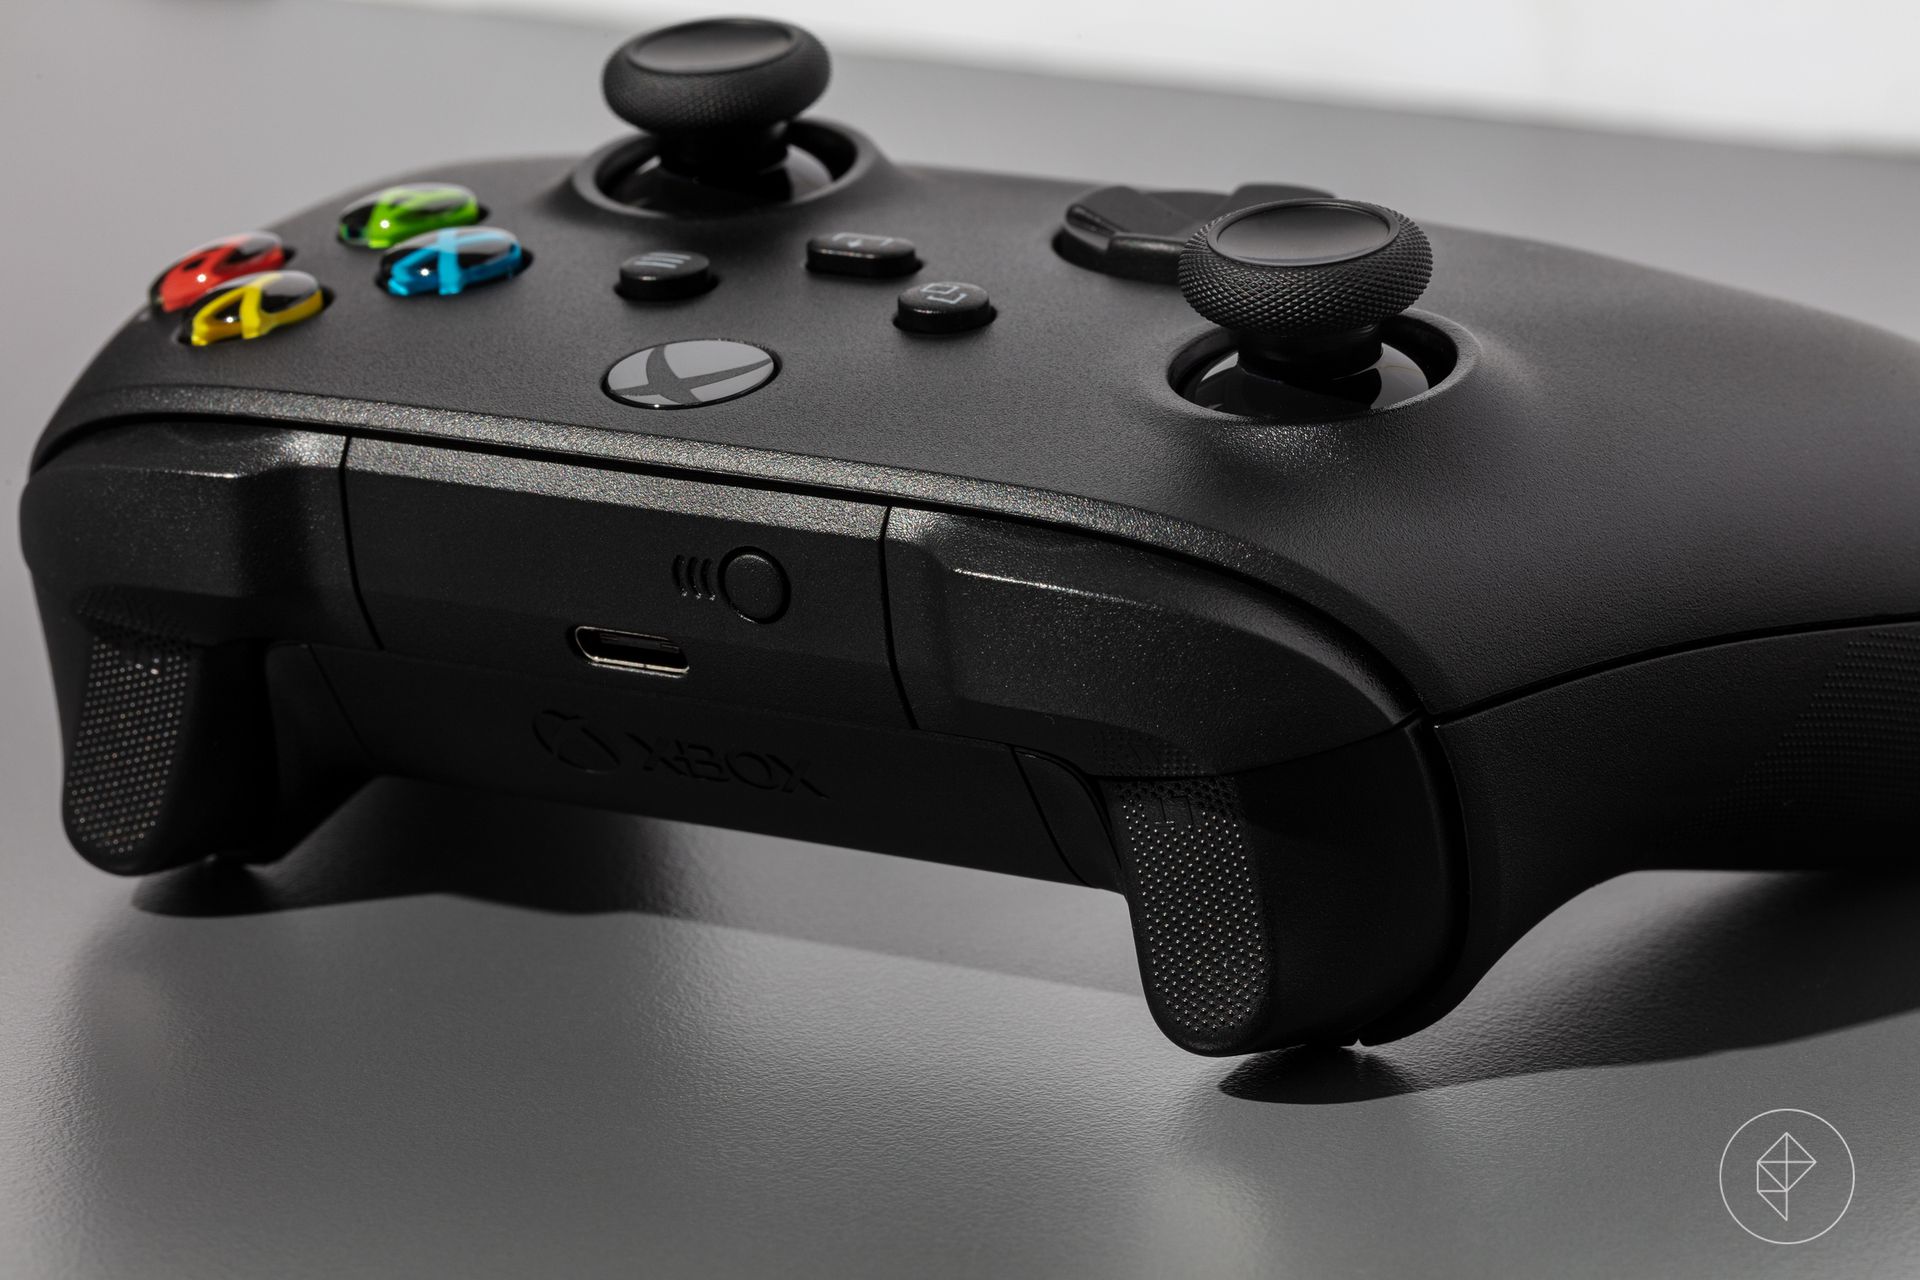 Console de jeu vidéo Xbox Series X photographiée sur un fond gris foncé